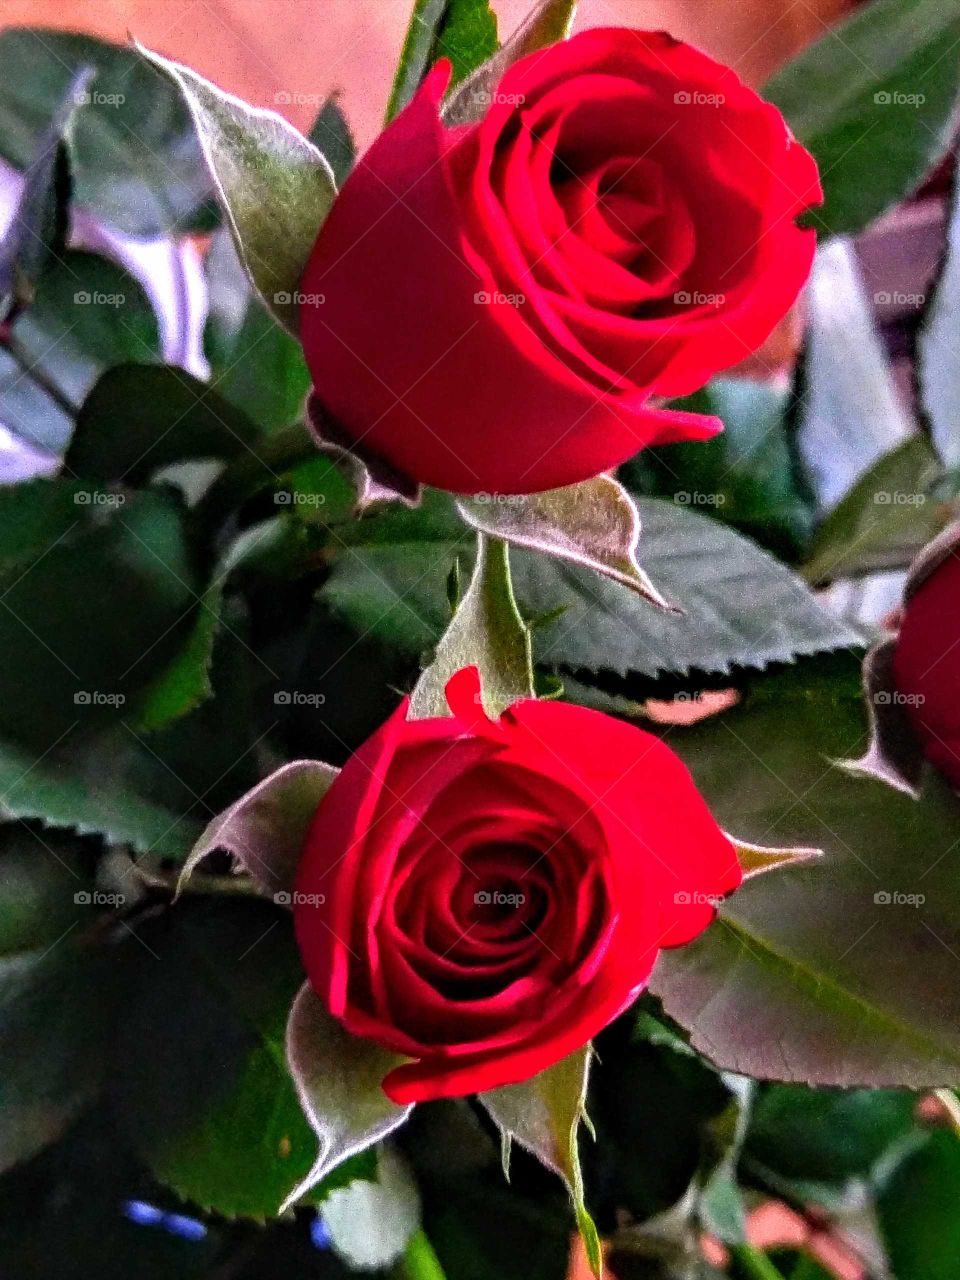 Beautiful Roses!